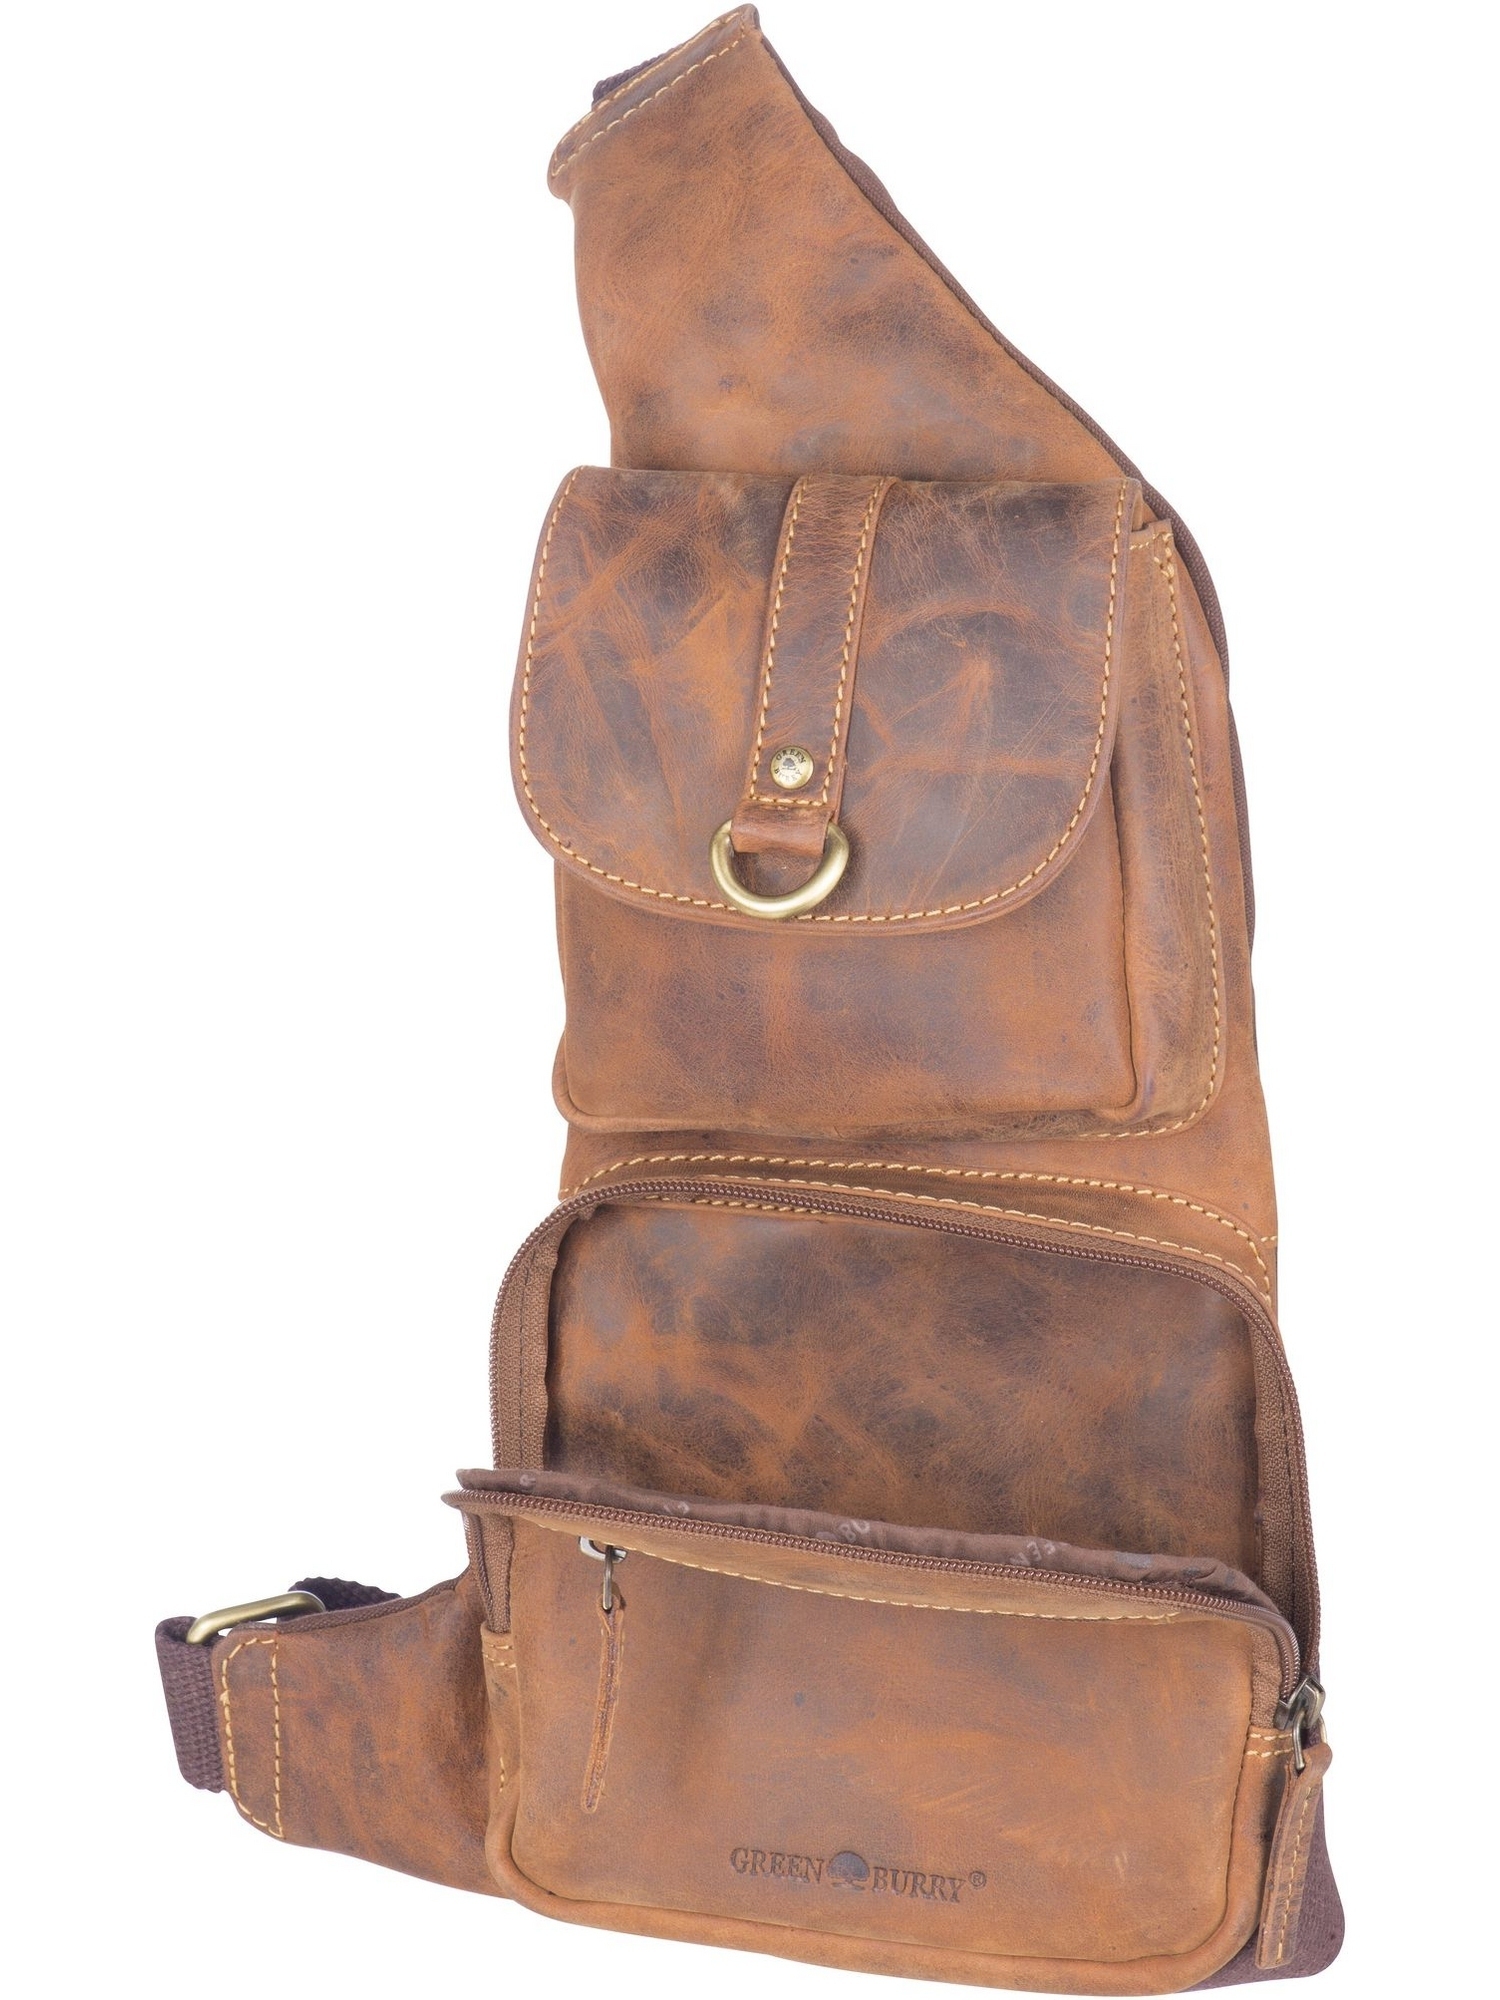 GreenBurry Bodybag Crossover-Bag Rind-Leder Vintage Daypack Rucksack Cross 1612 